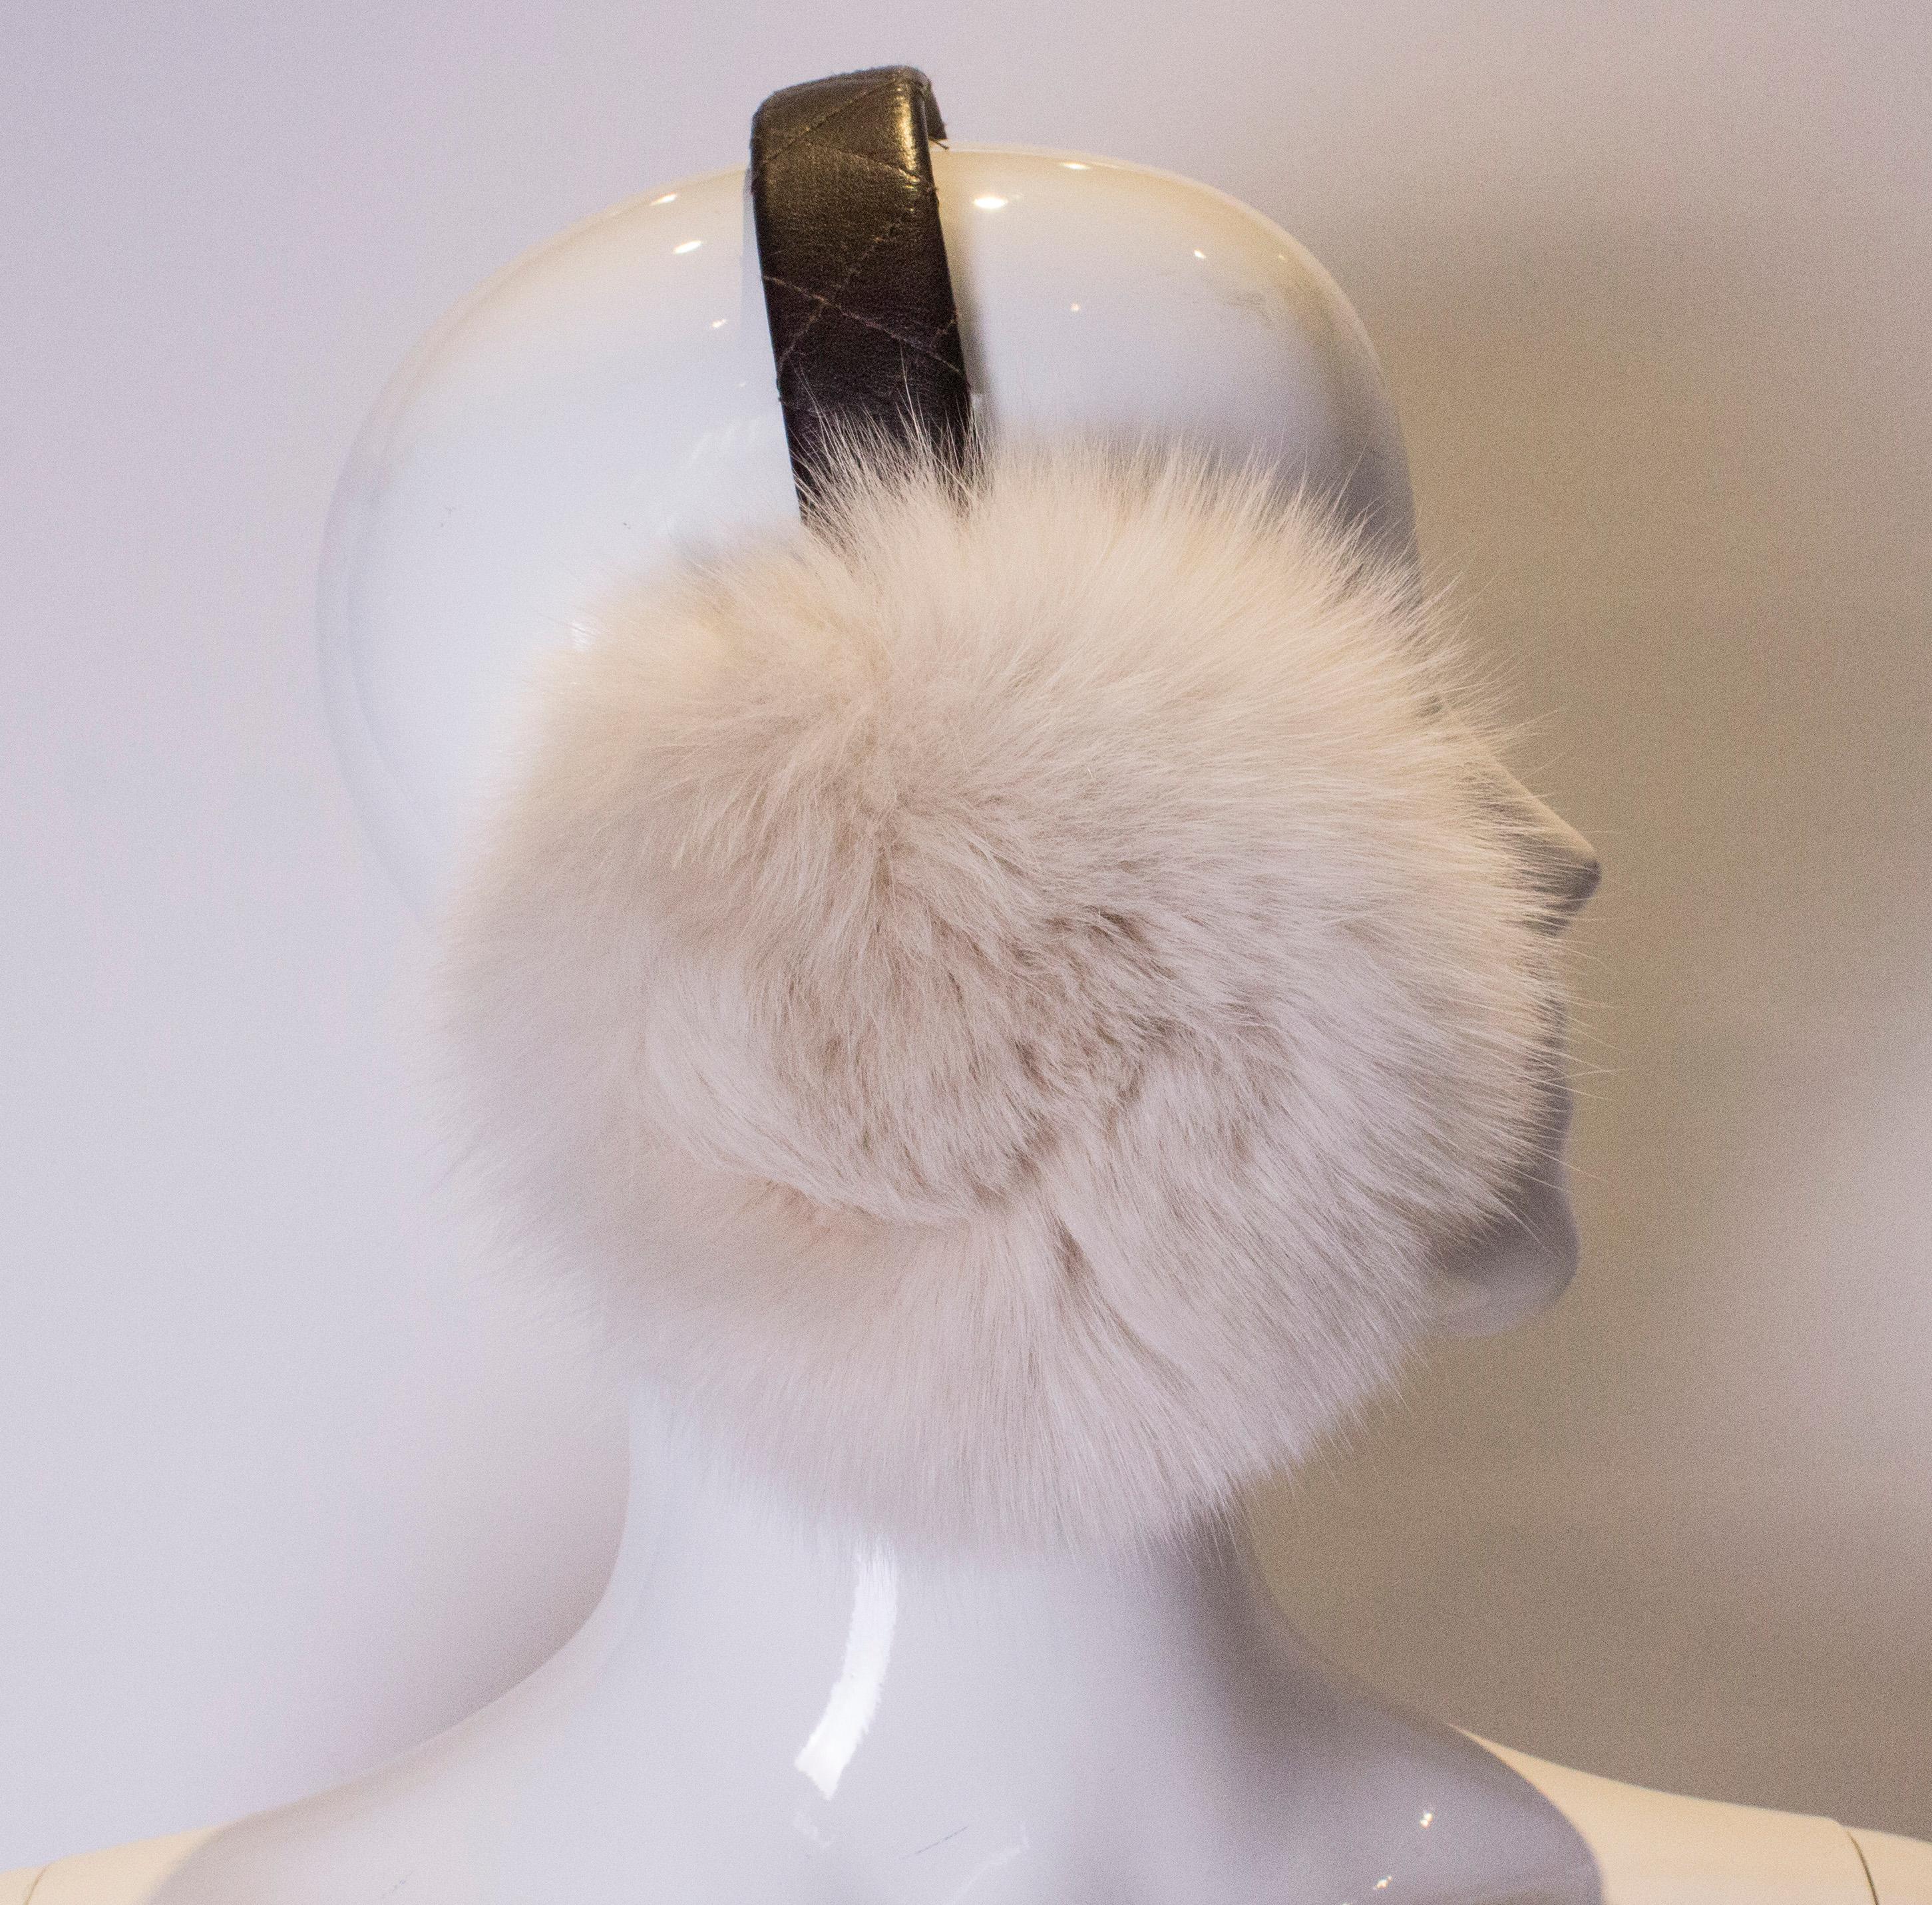 Diese lustigen, praktischen und nie benutzten Ohrenschützer aus Fuchspelz sind ideal für den Winter.
Sie sind weiß und haben ein elegantes, braunes Lederband als Verbindung.